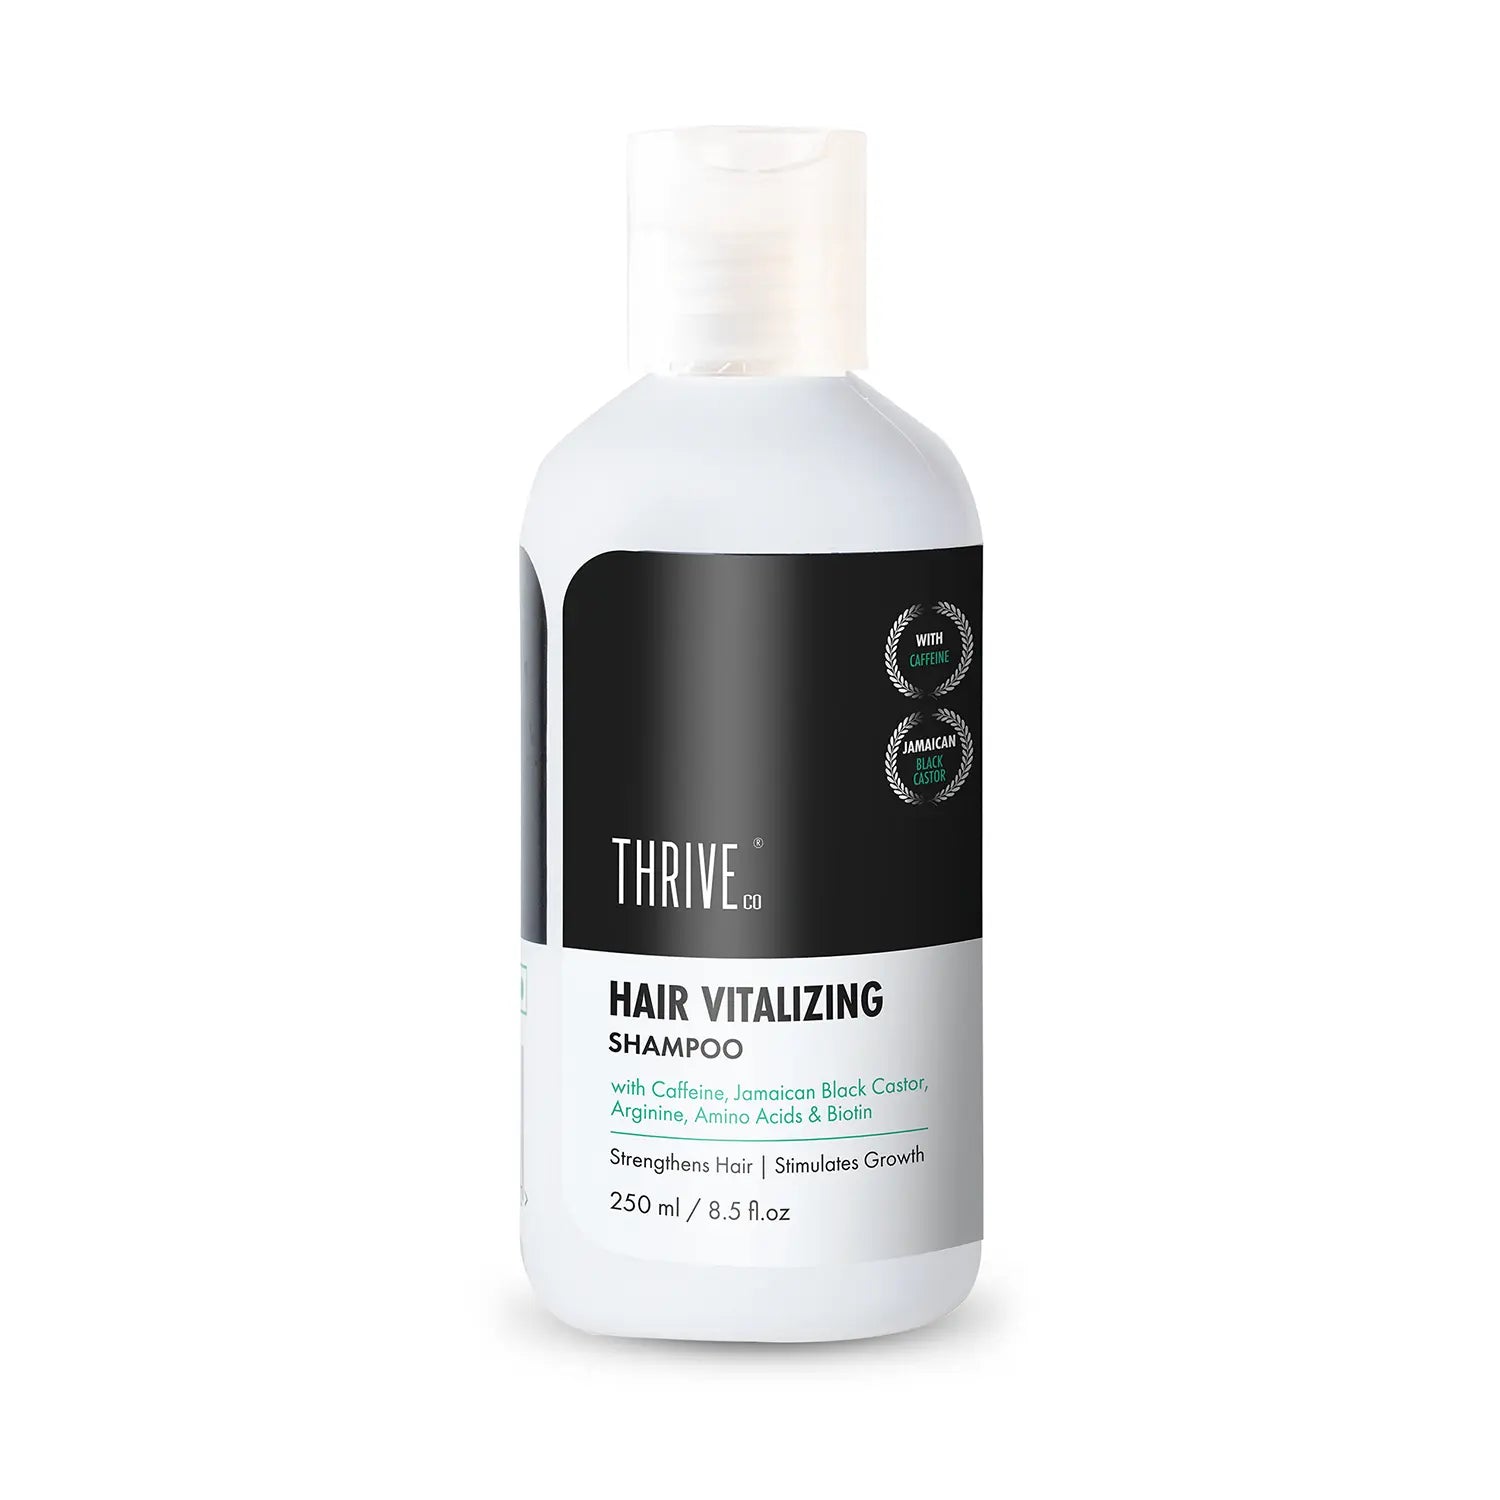 Hair Vitalizing Shampoo, 250ml